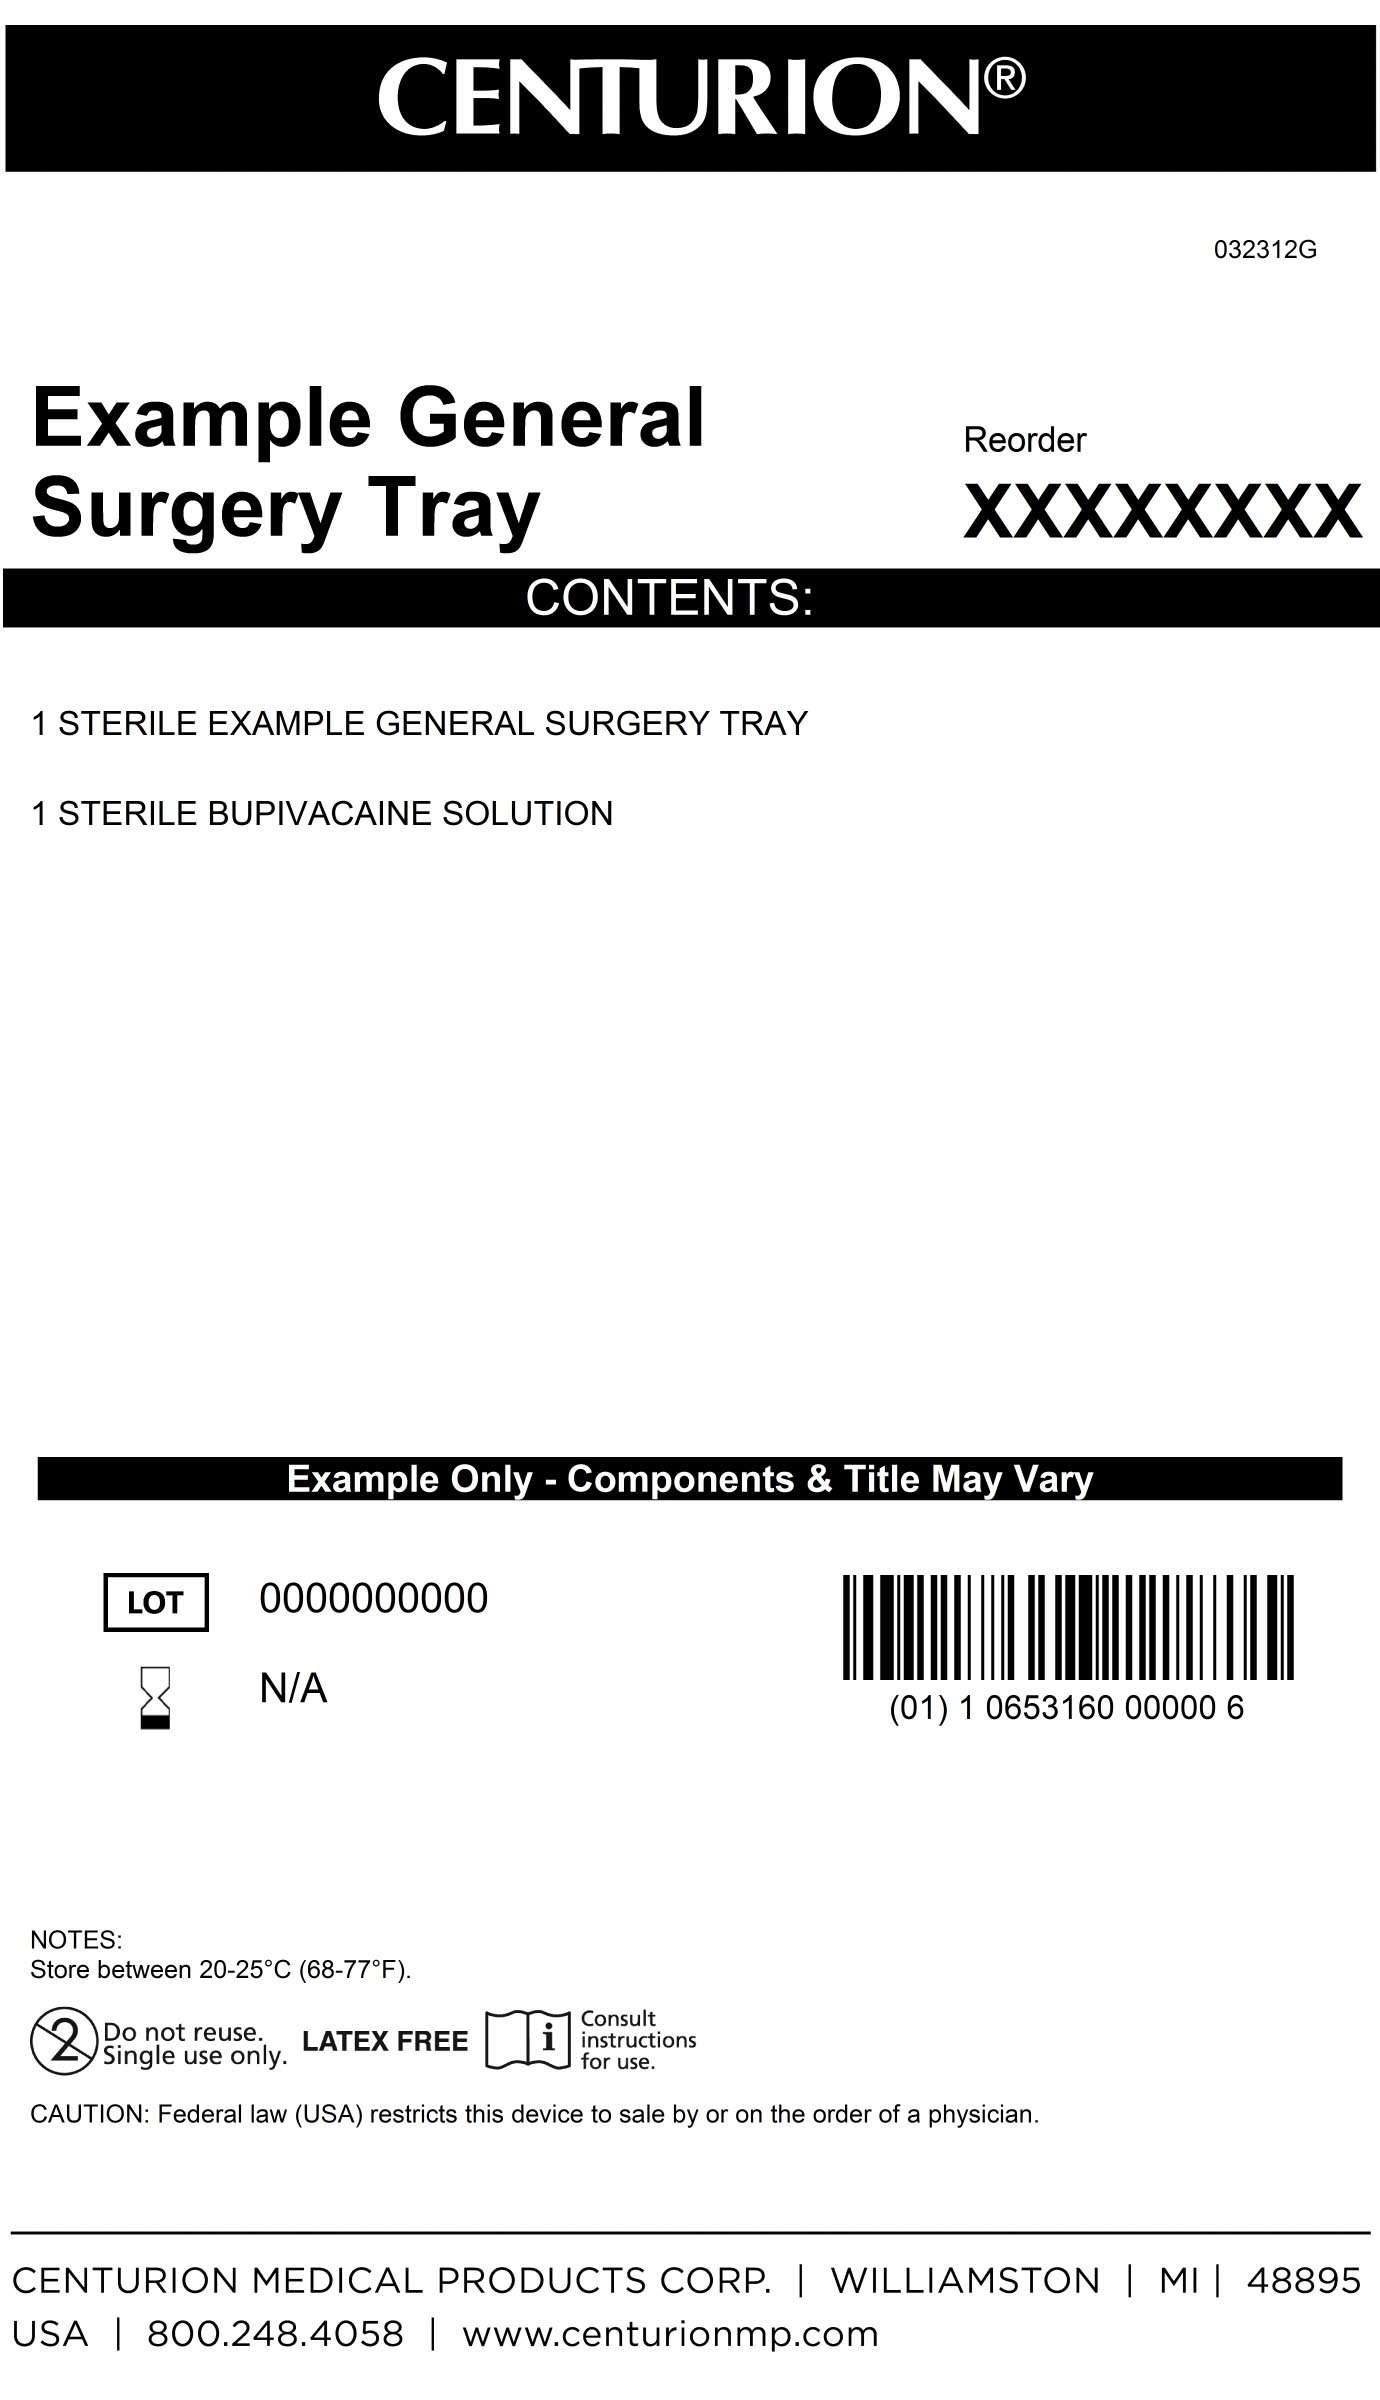 General Surgery Kit